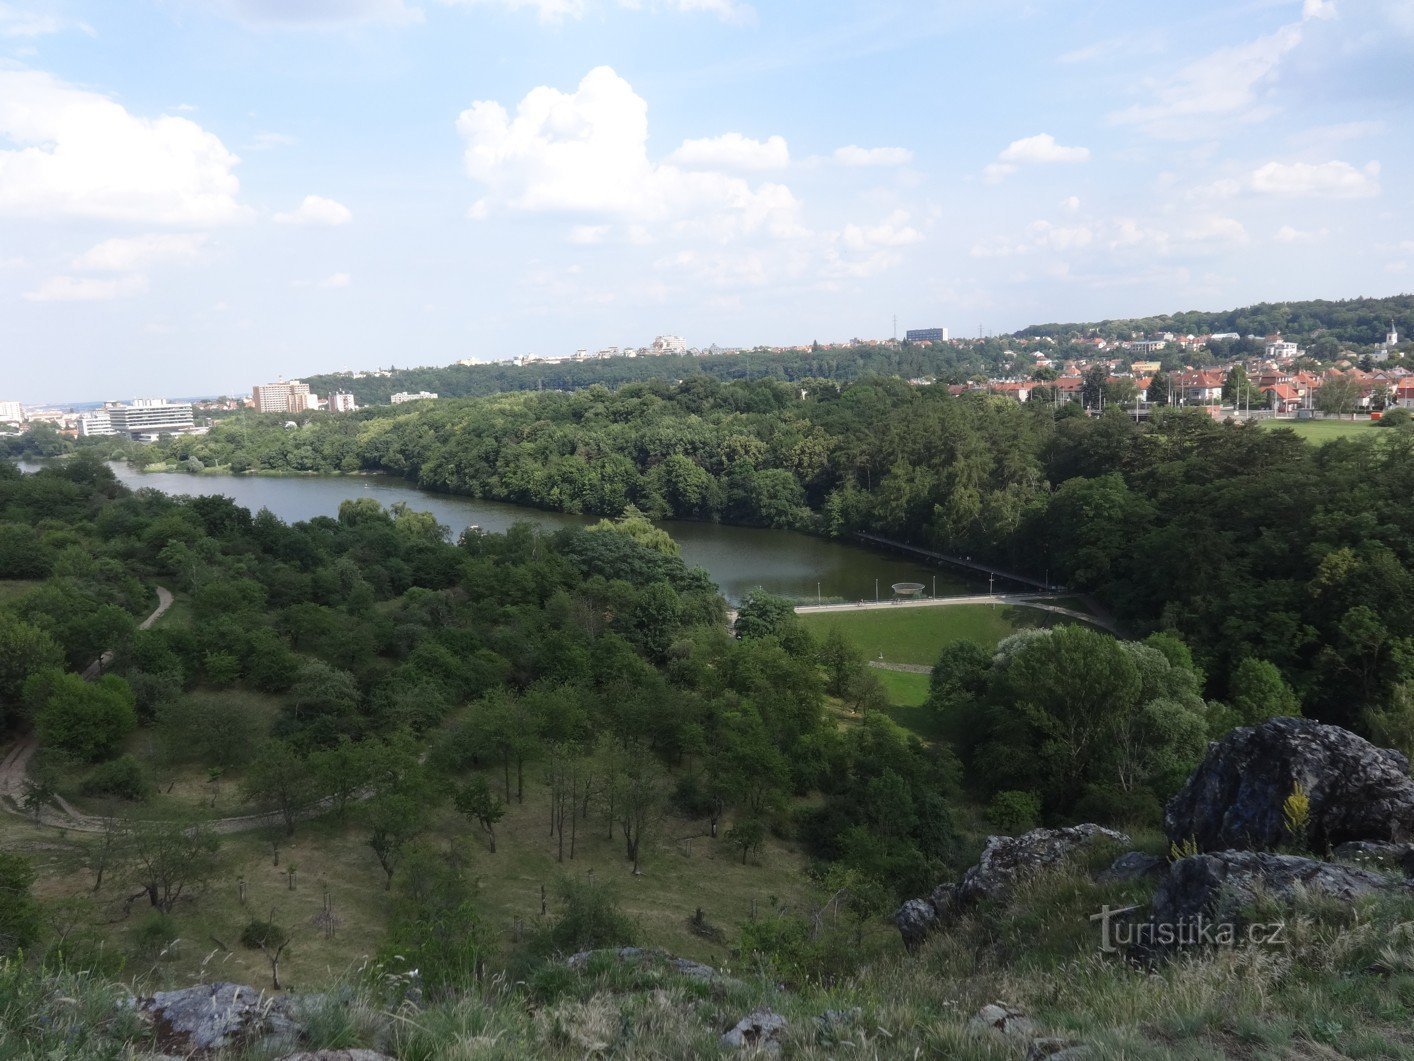 Natuurpark Šárka aan de rand van de hoofdstad